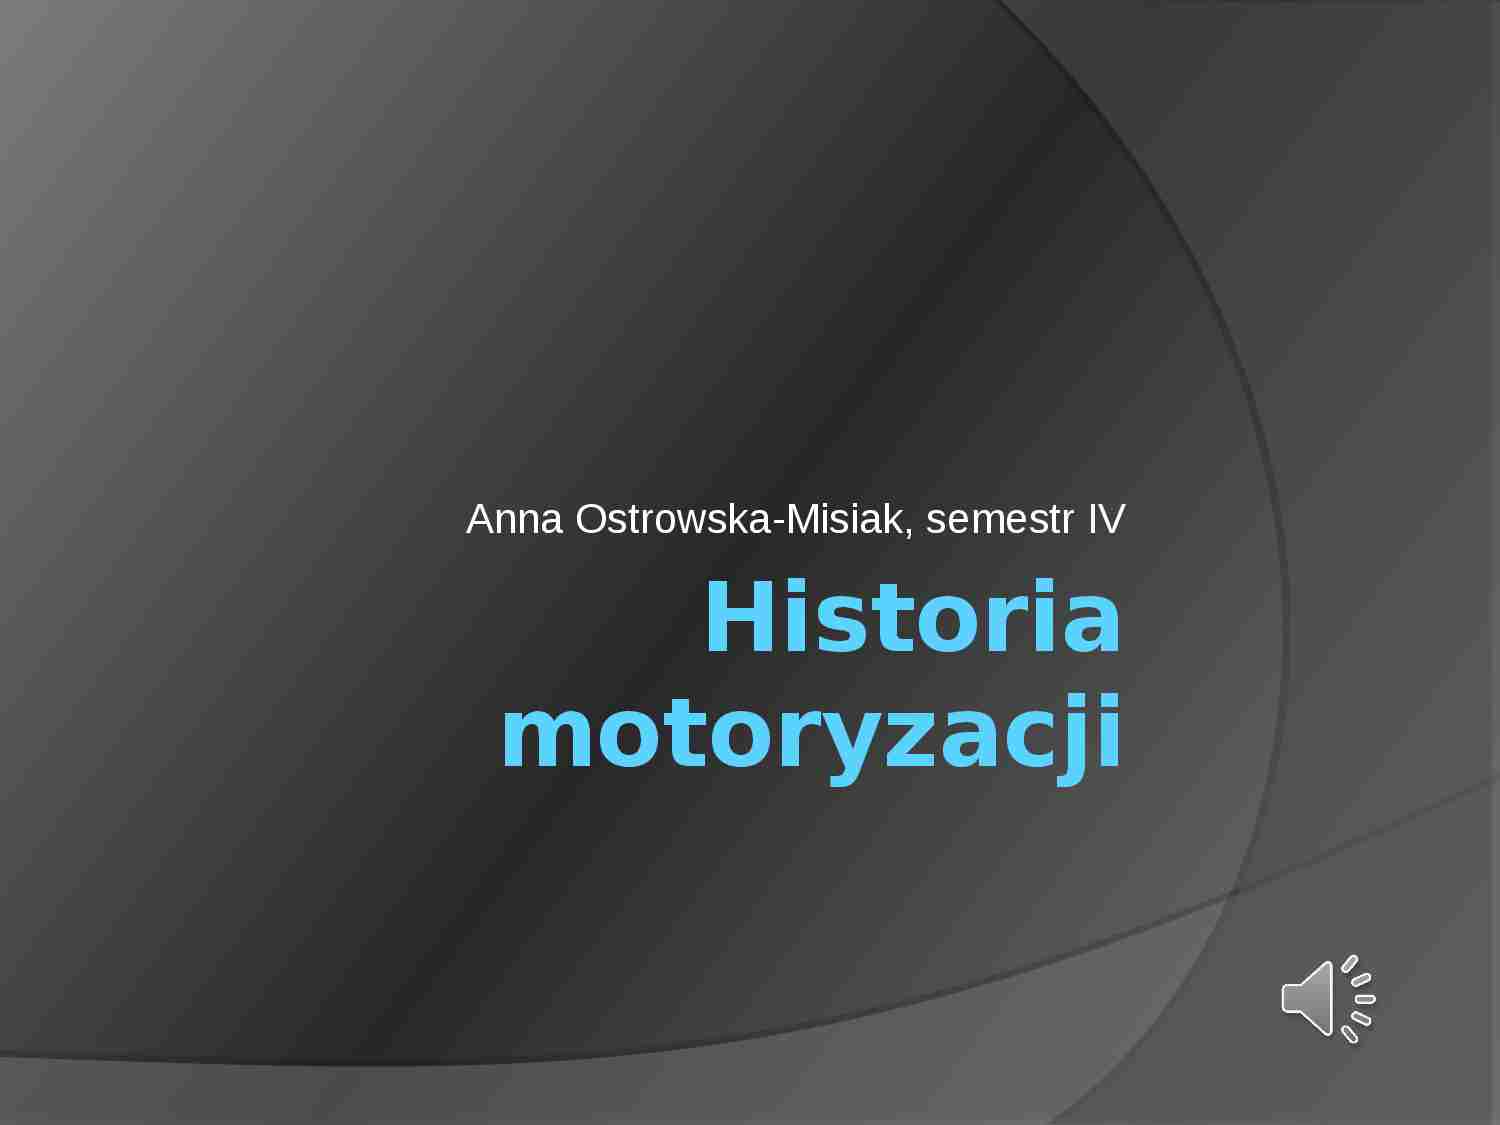 Historia motoryzacji - prezentacja zaliczeniowa - strona 1